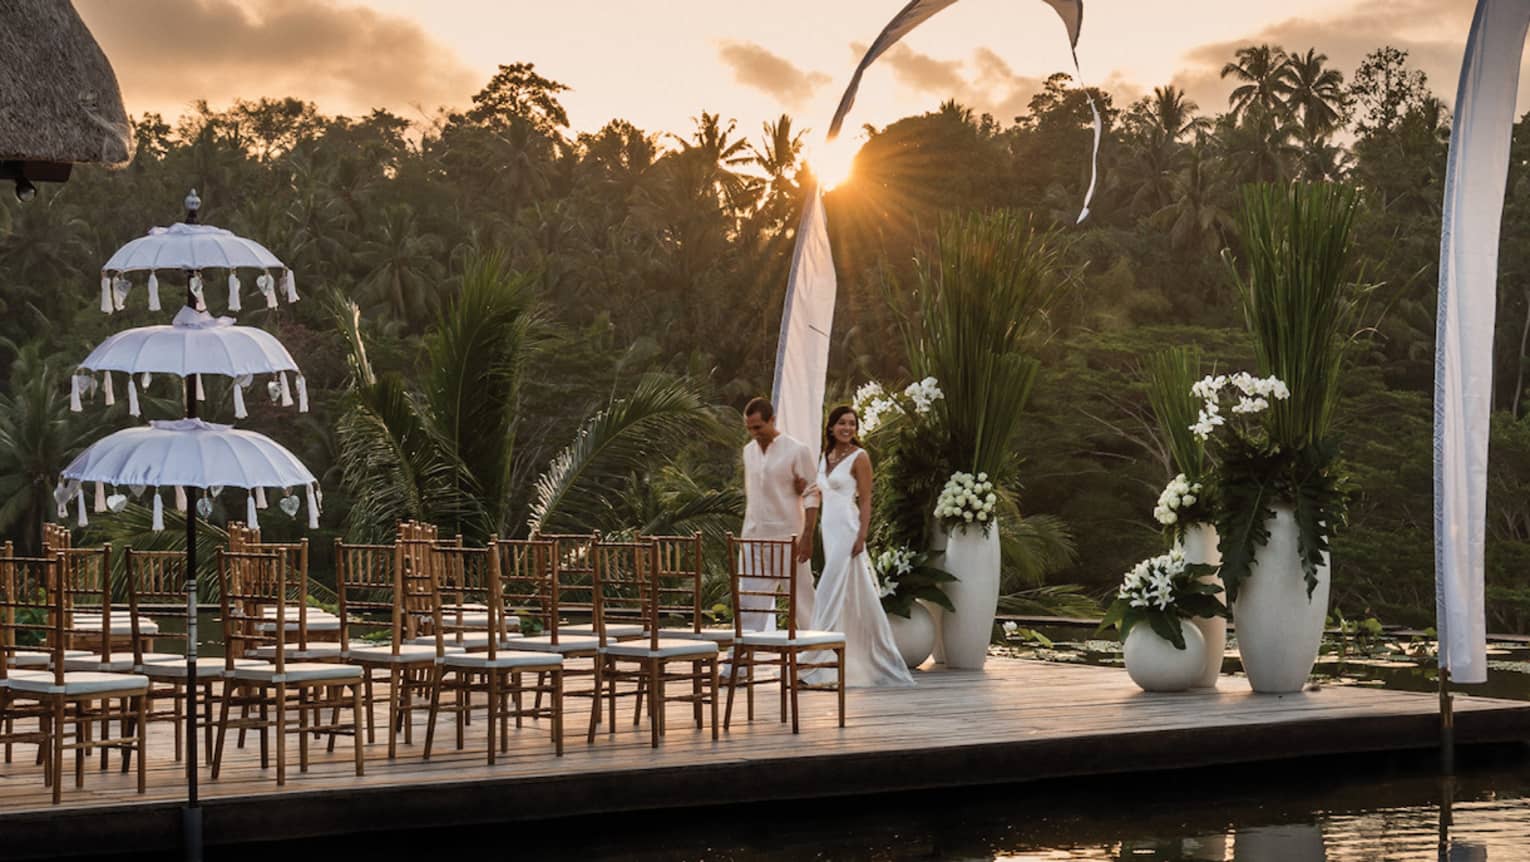 Wedding ceremony on platform over pond at sunset